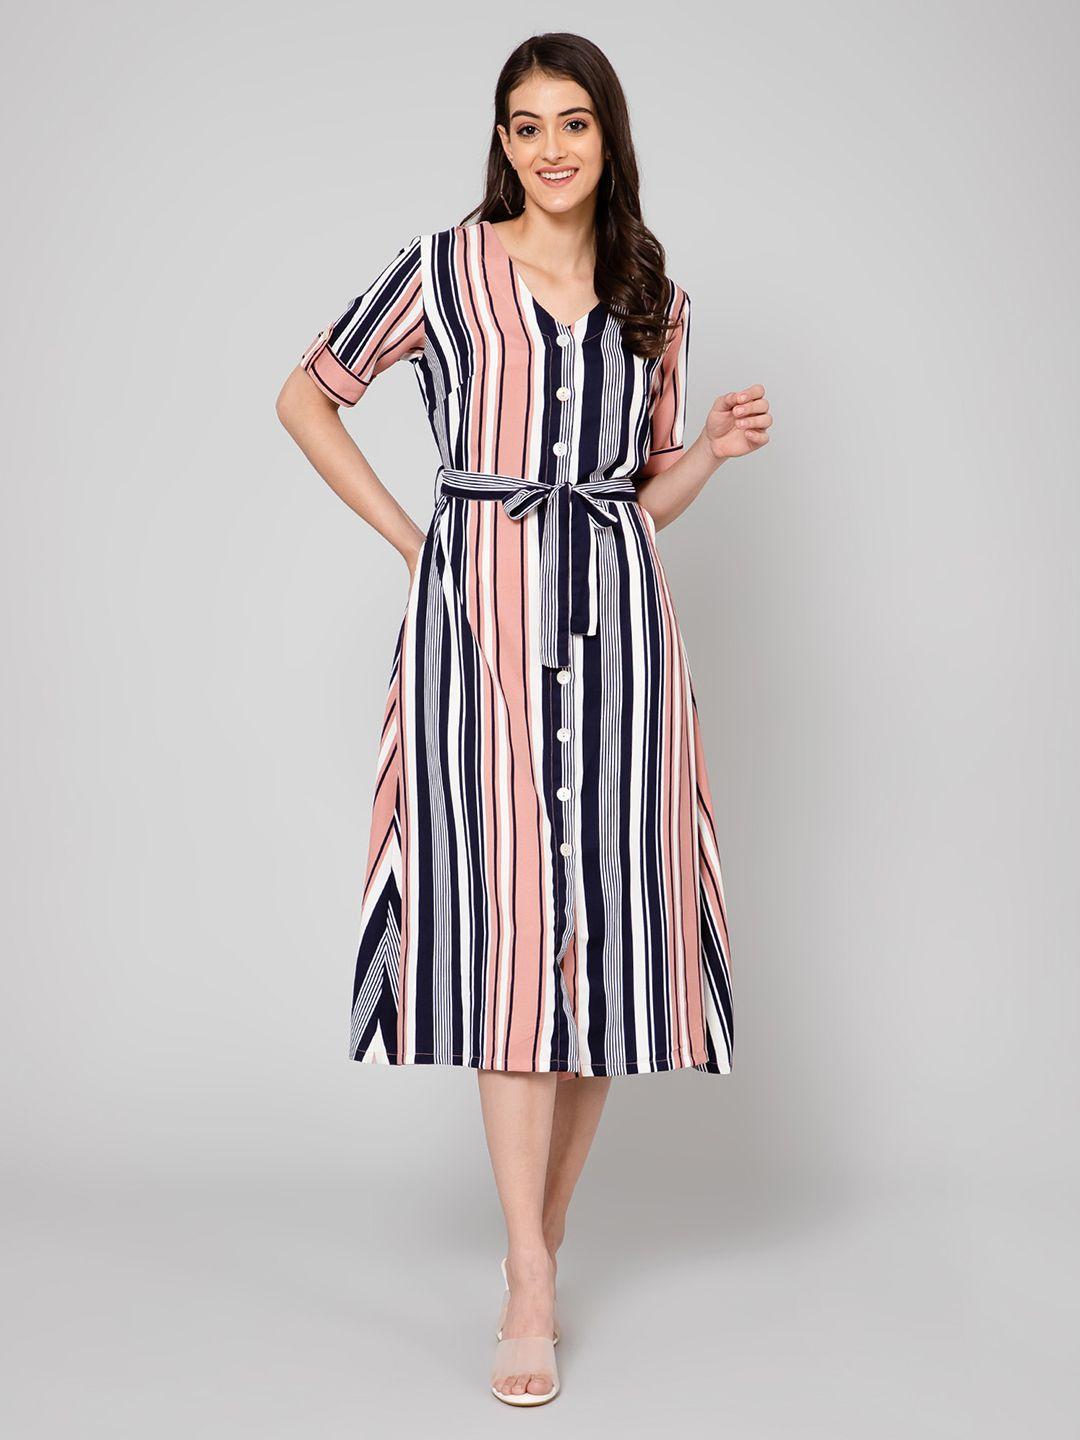 cantabil printed striped button midi dress